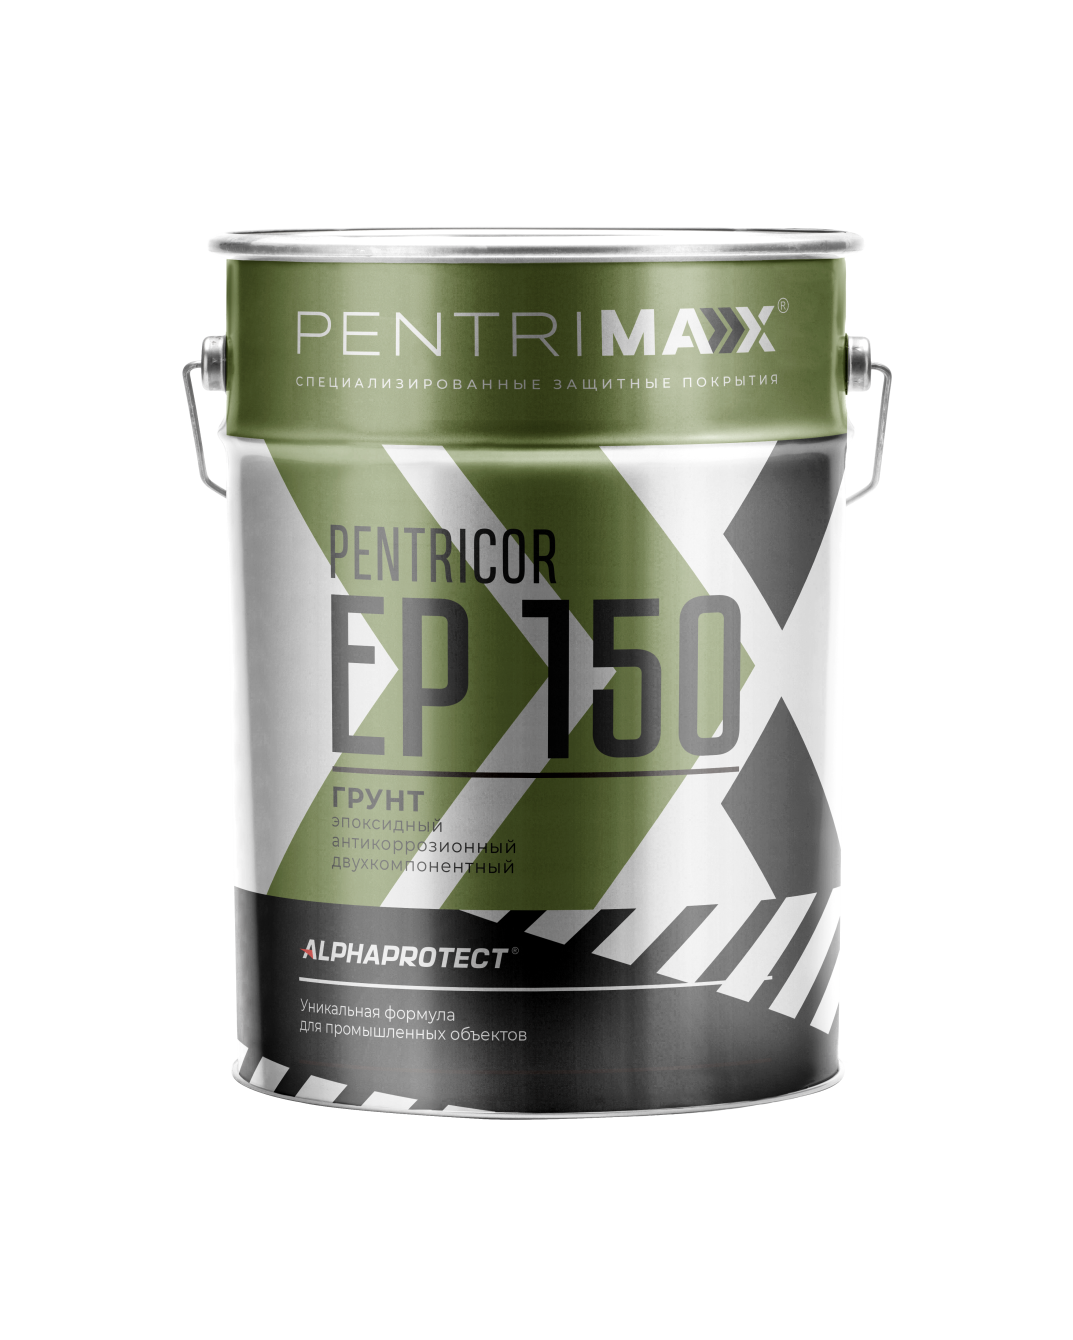 Эпоксидный грунт для бетона PENTRICOR EP 150